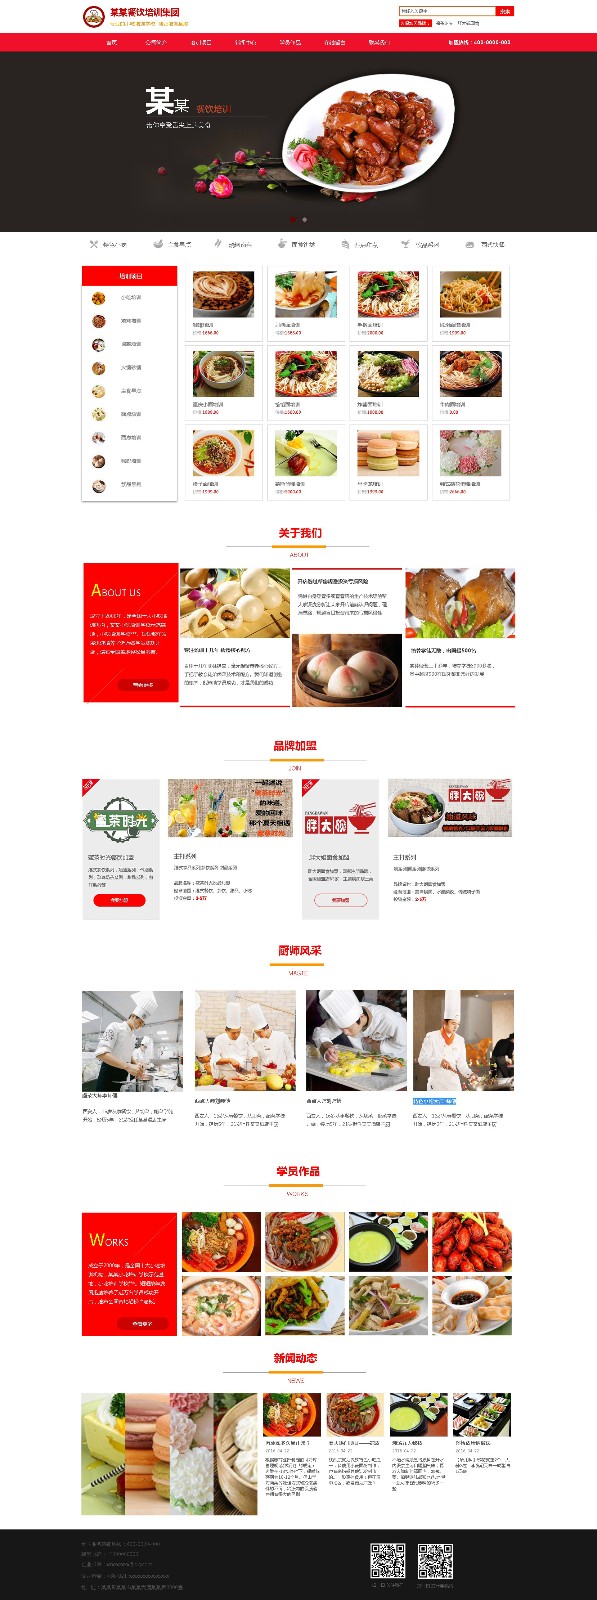 企业网站精美模板-restaurants-55